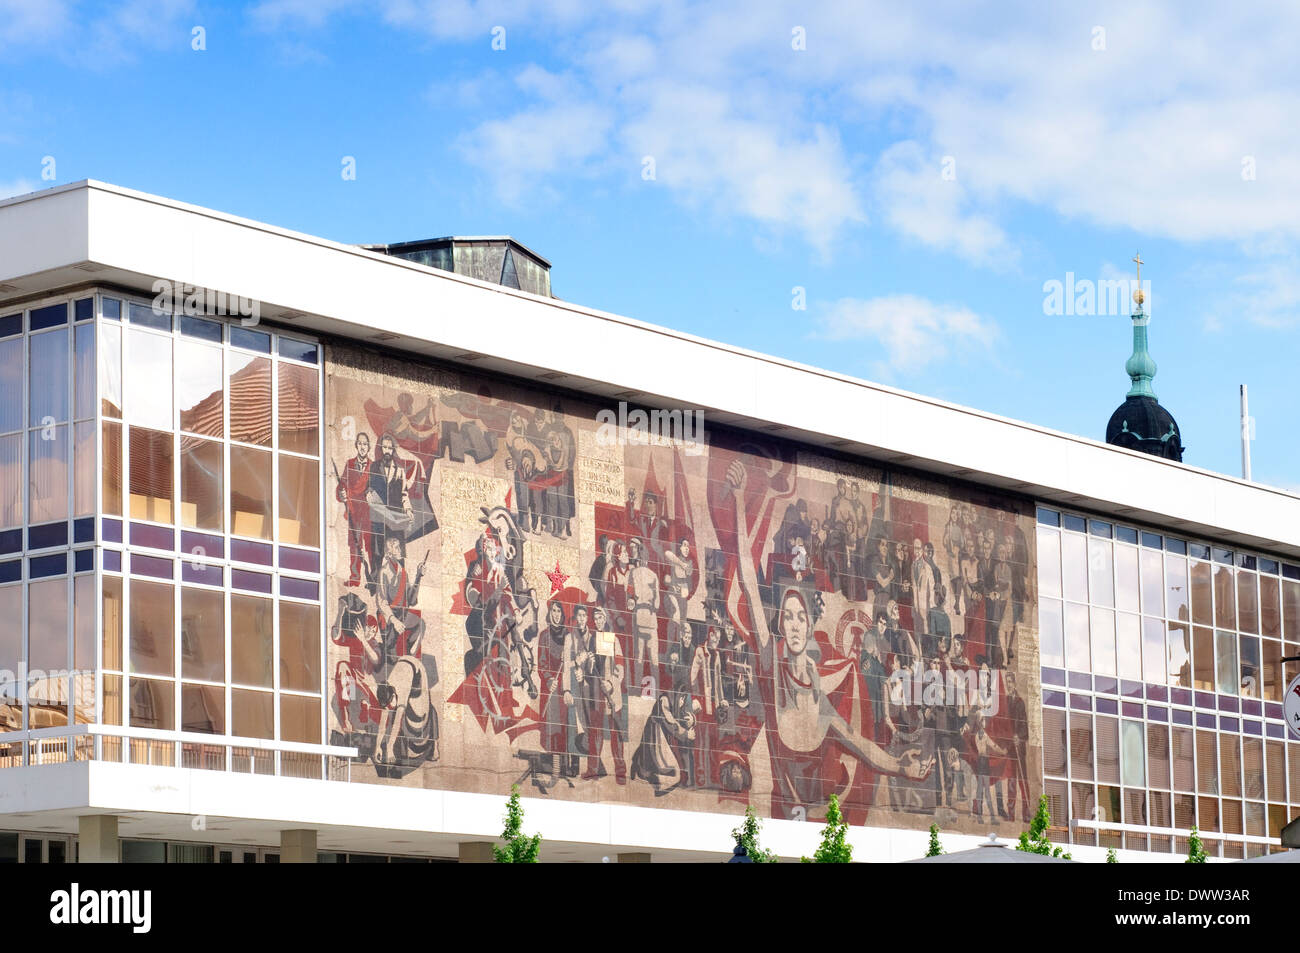 In Germania, in Sassonia, Dresda, Mosaico socialista presso il Palazzo della Cultura Kulturpalast Foto Stock